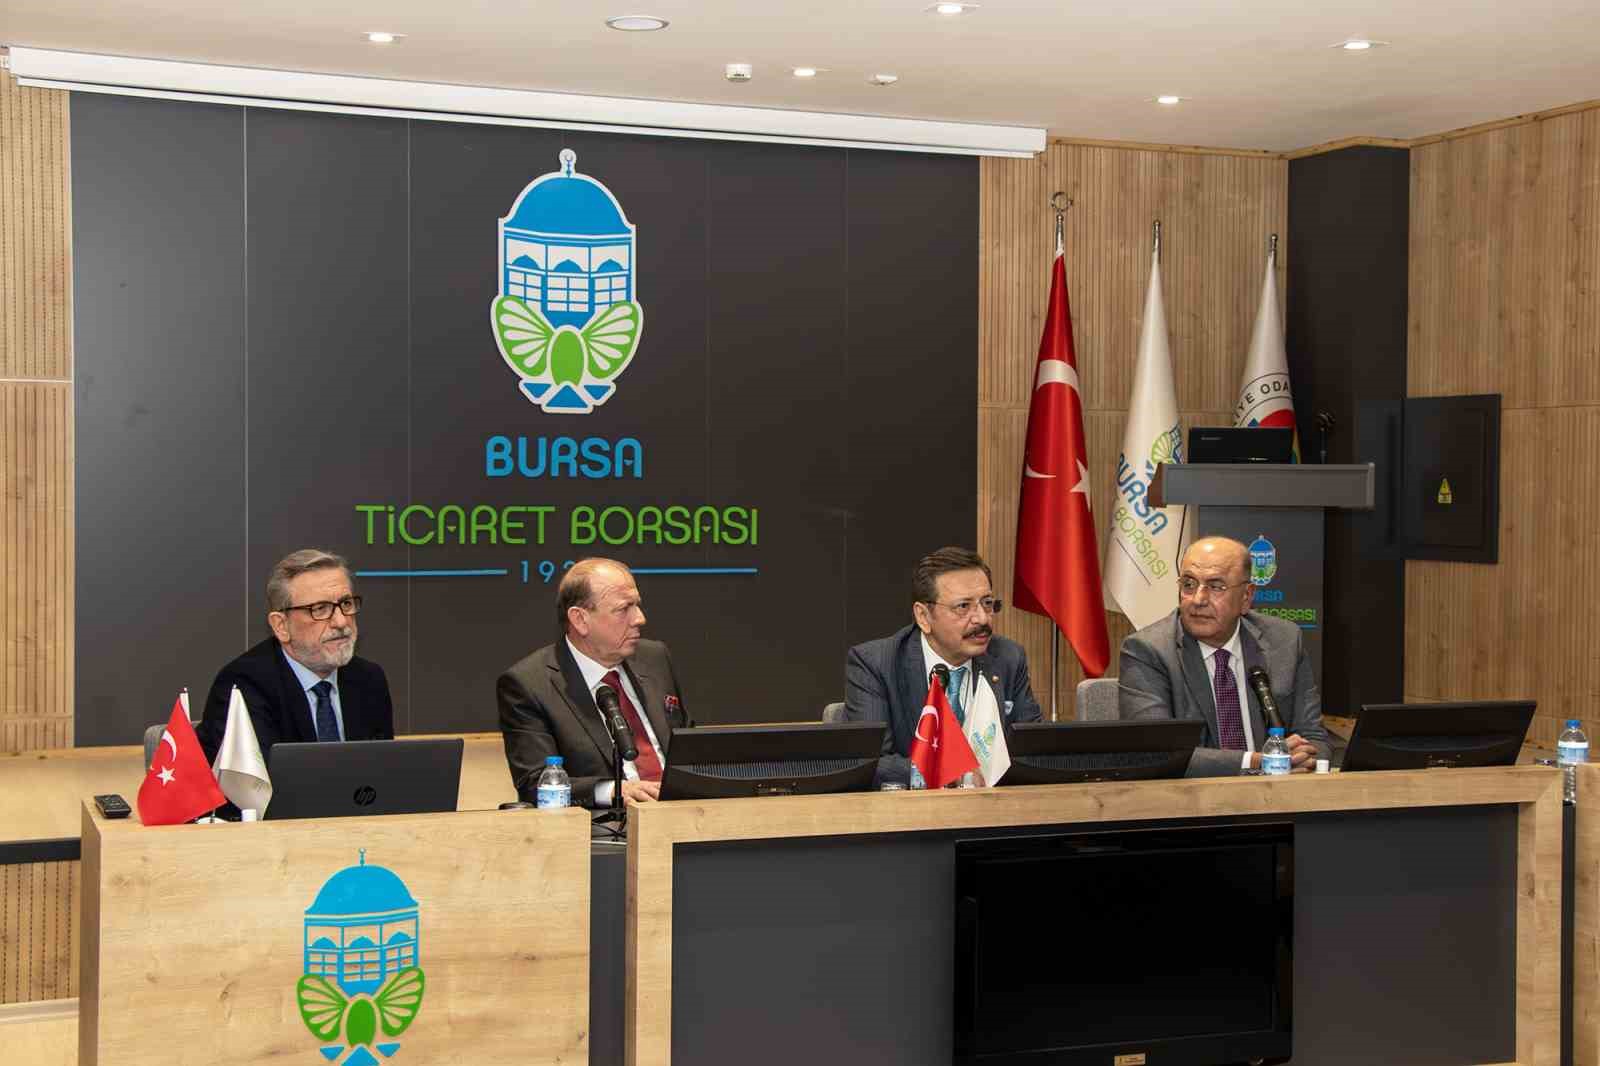 Hisarcıklıoğlu: “Bursa Ticaret Borsası, Türkiye ekonomisine önemli katkılar sağlıyor”